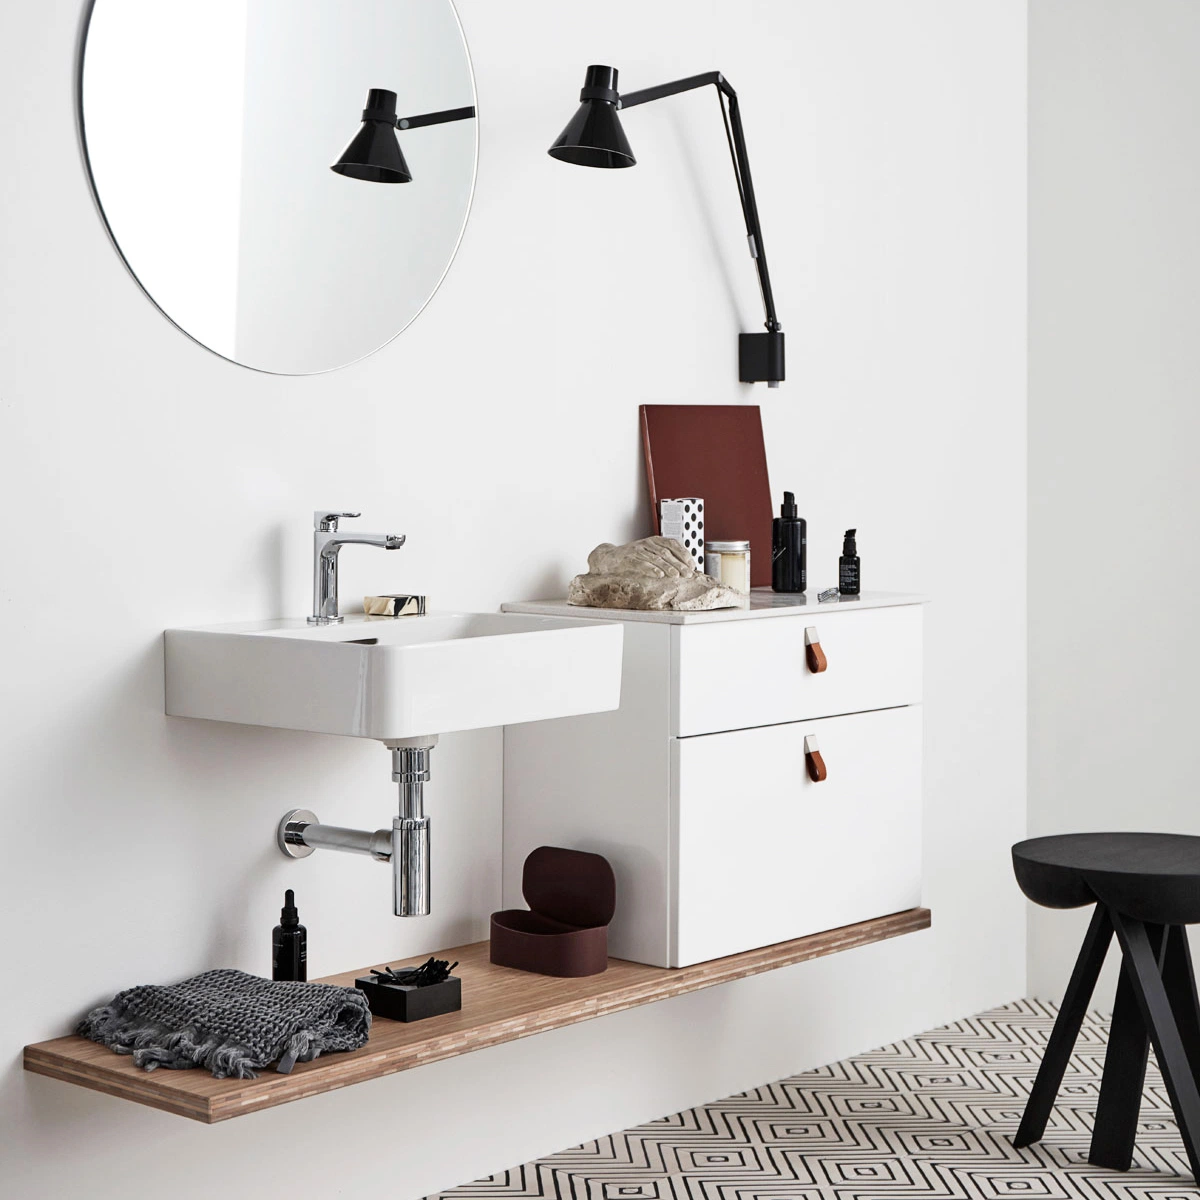 Оптовая торговля Custom легко собрать современном Итальянском стиле Mini туалетный столик в ванной комнате дизайн